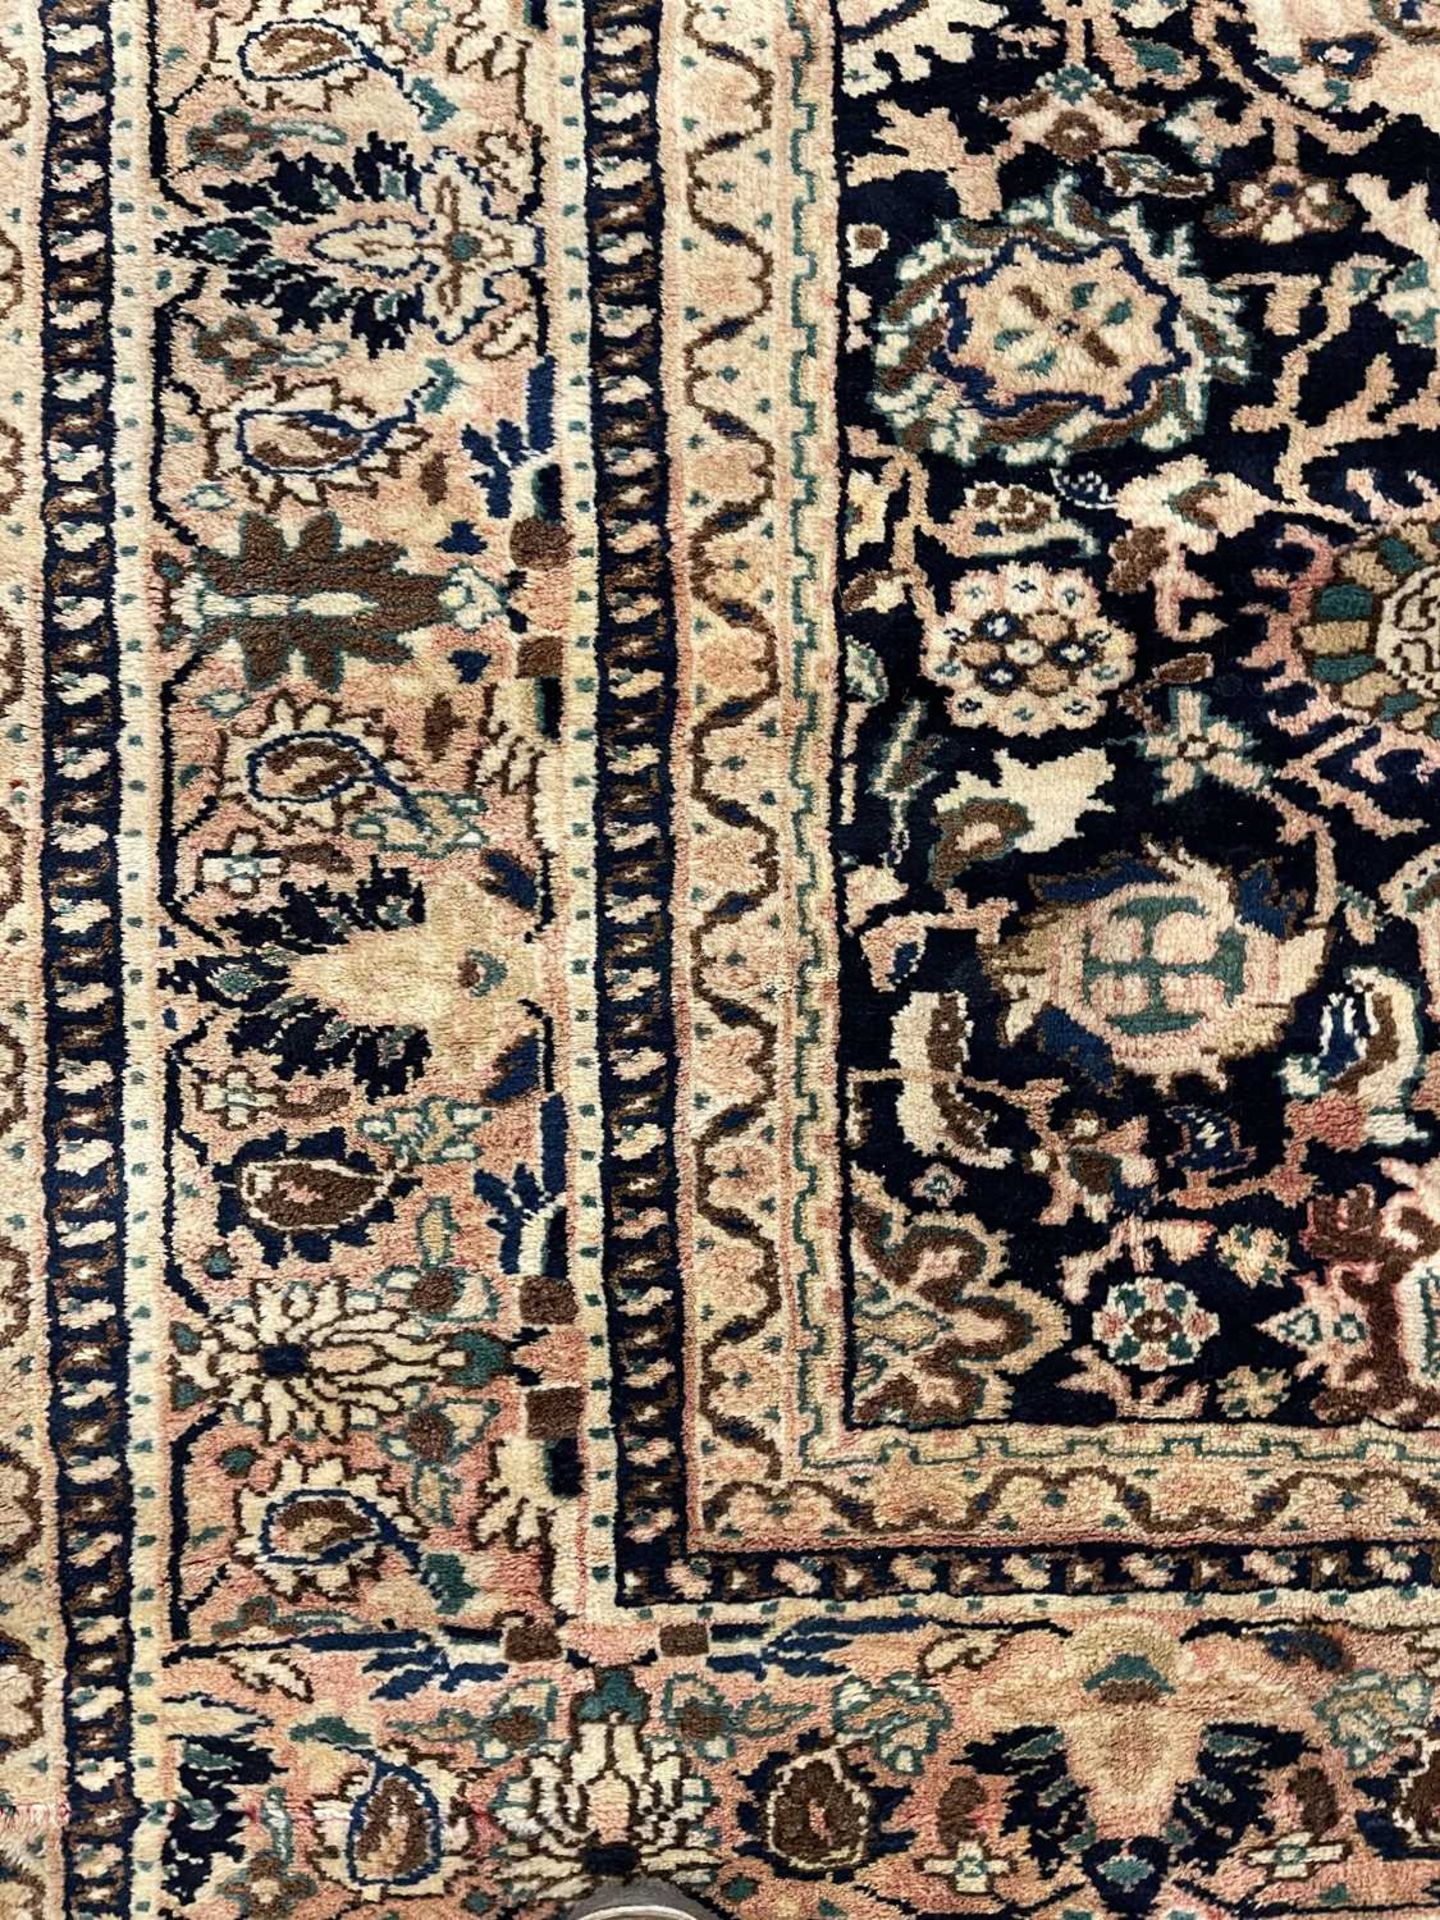 A Persian Bidjar carpet of Mahi design - Image 12 of 30